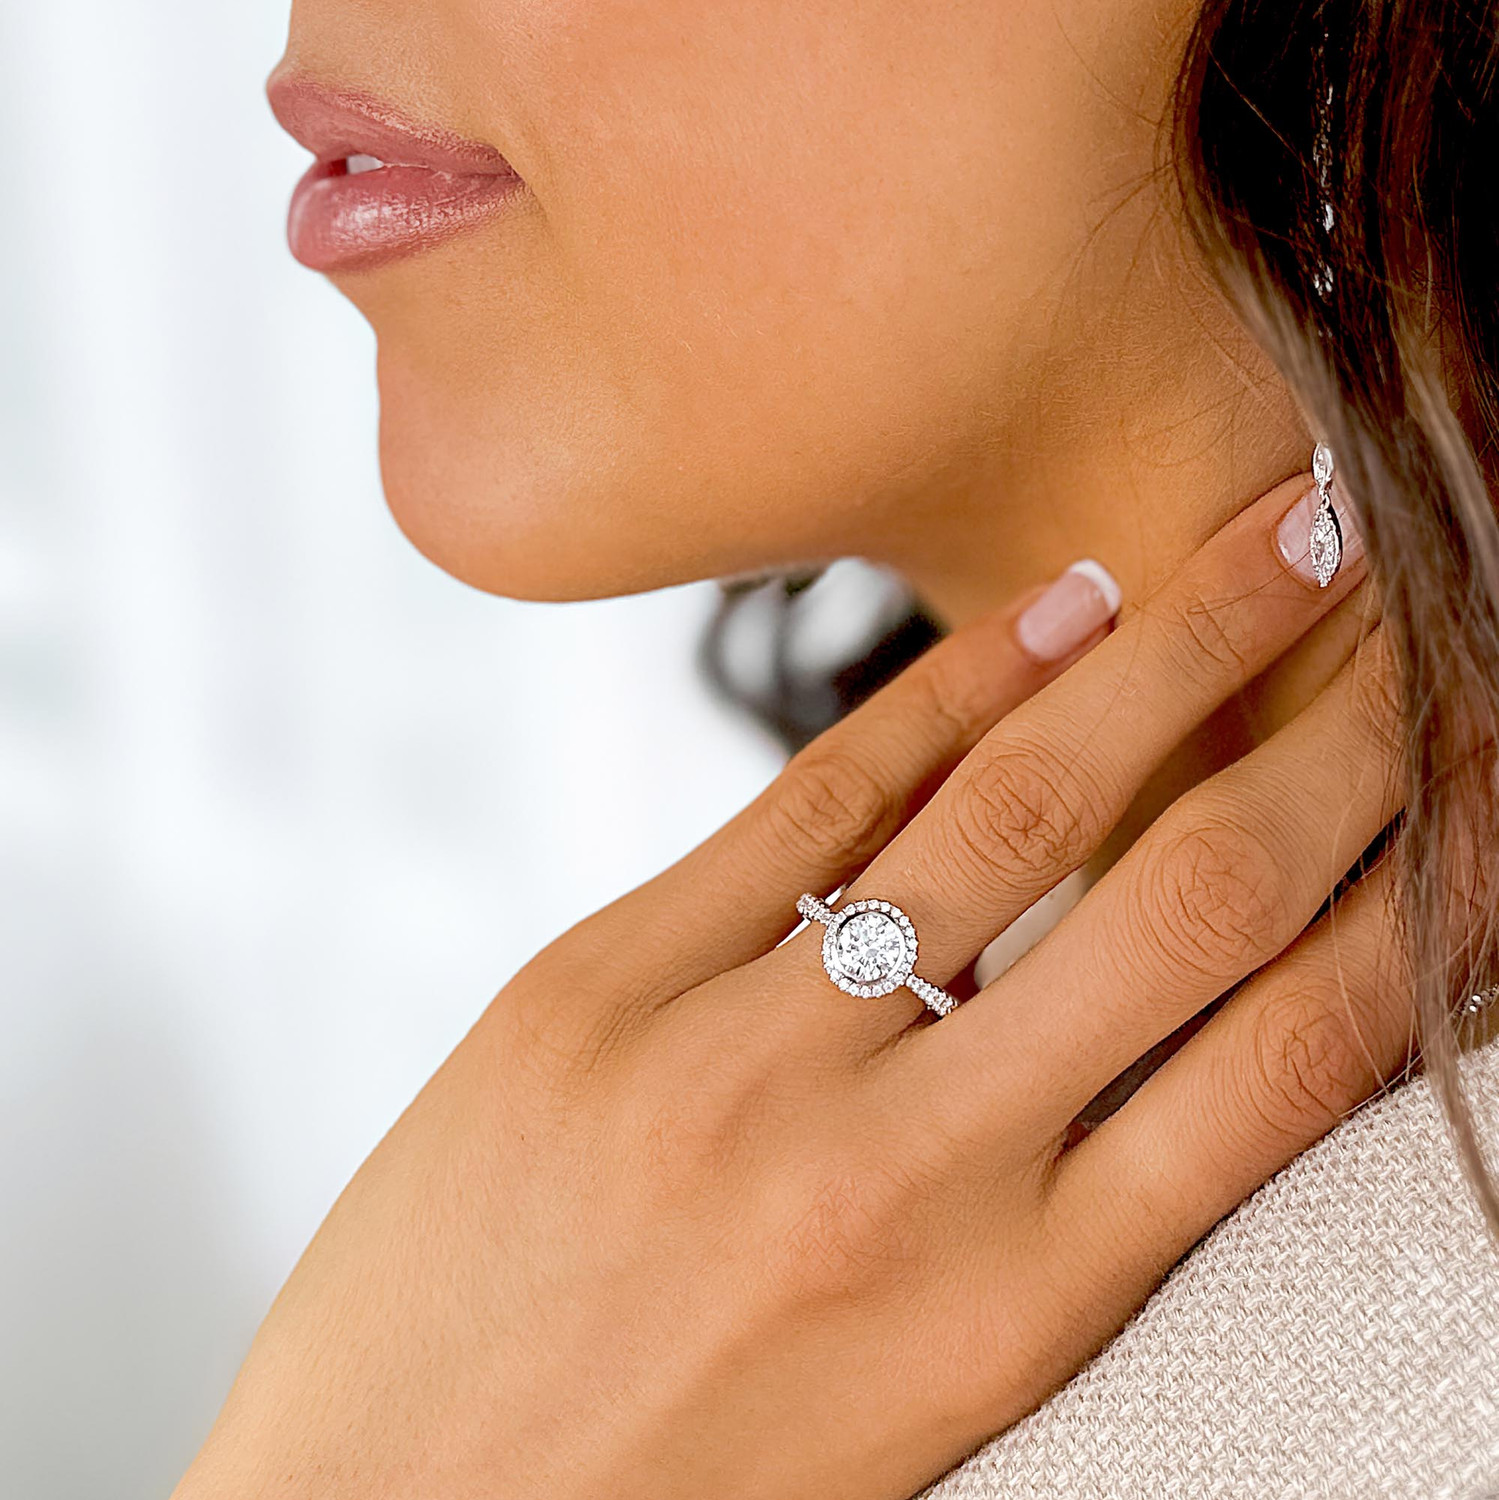 00565 HD031 Bezel set round brilliant cut diamond halo engagement ring -  YouTube